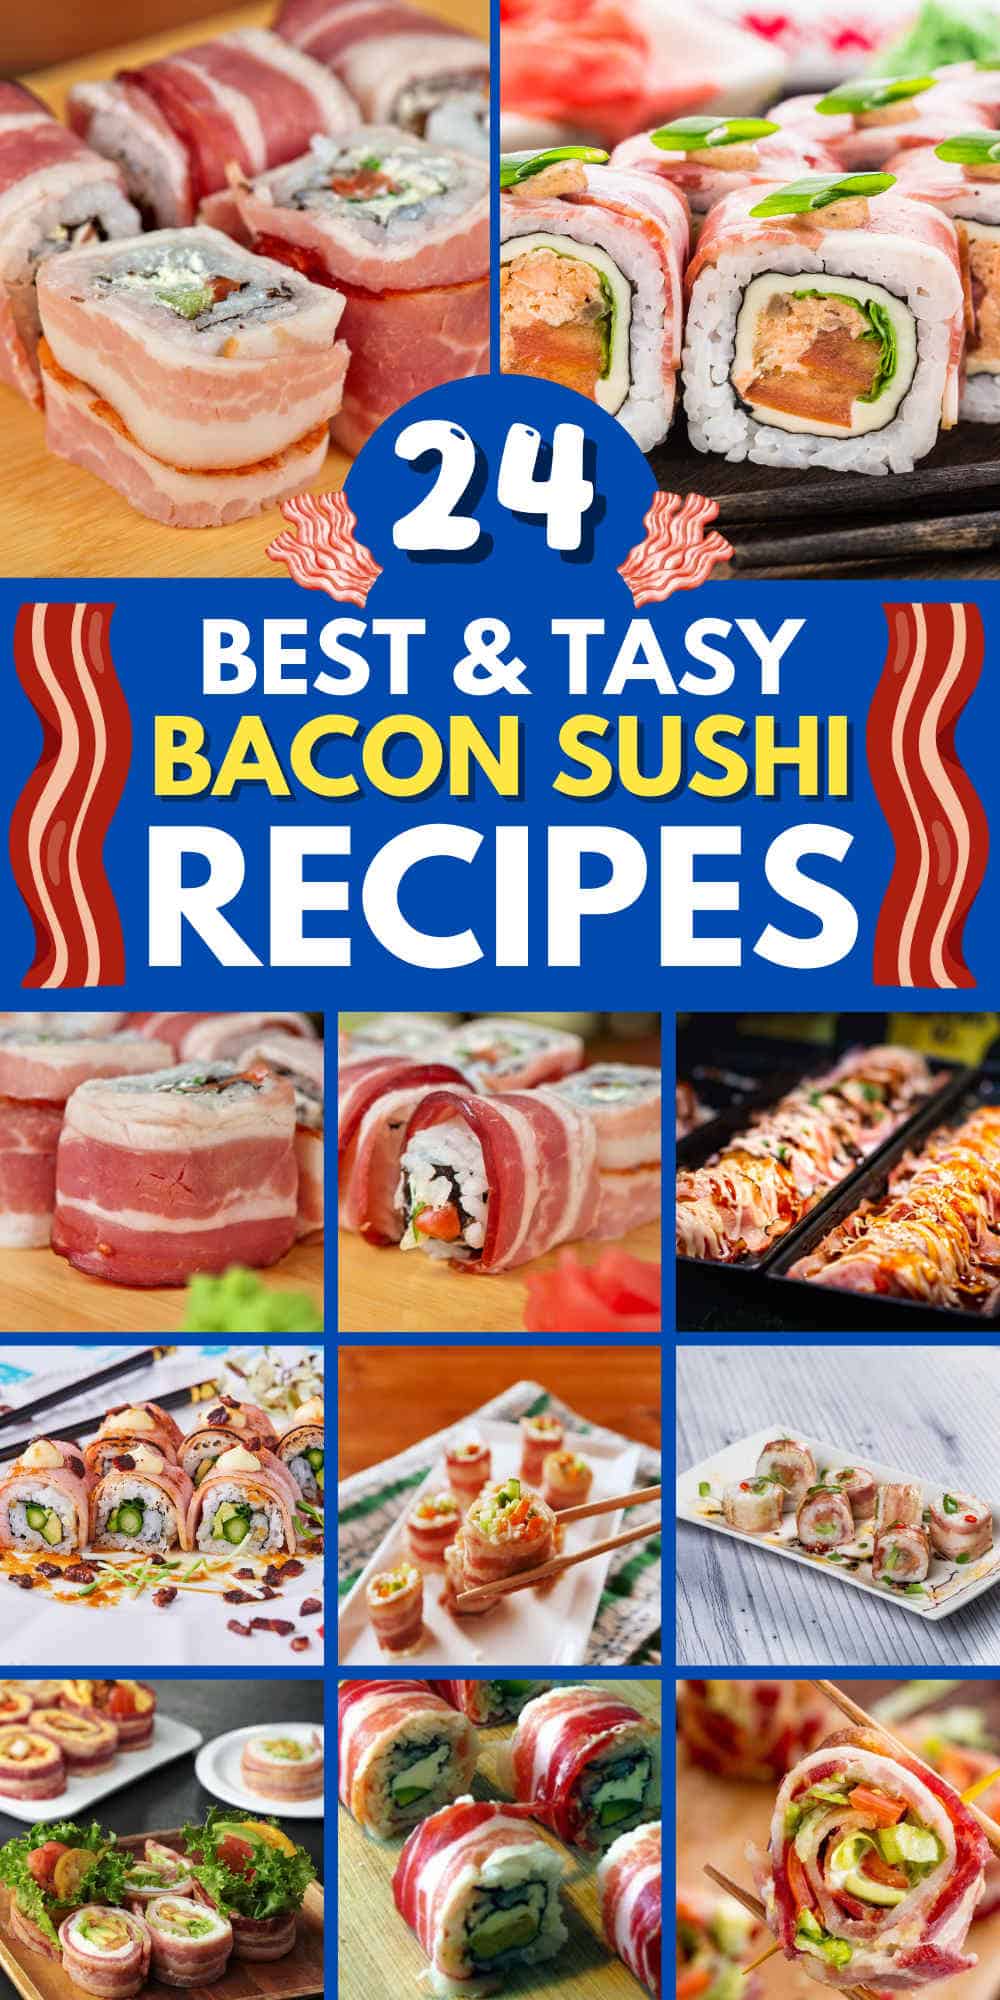 bacon sushi recipes